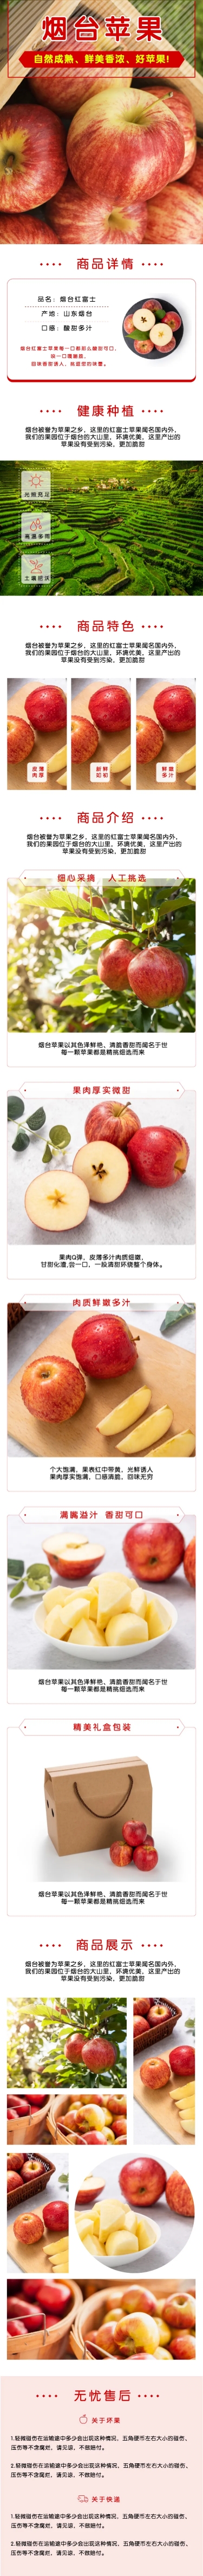 食品生鲜水果苹果详情页预览效果